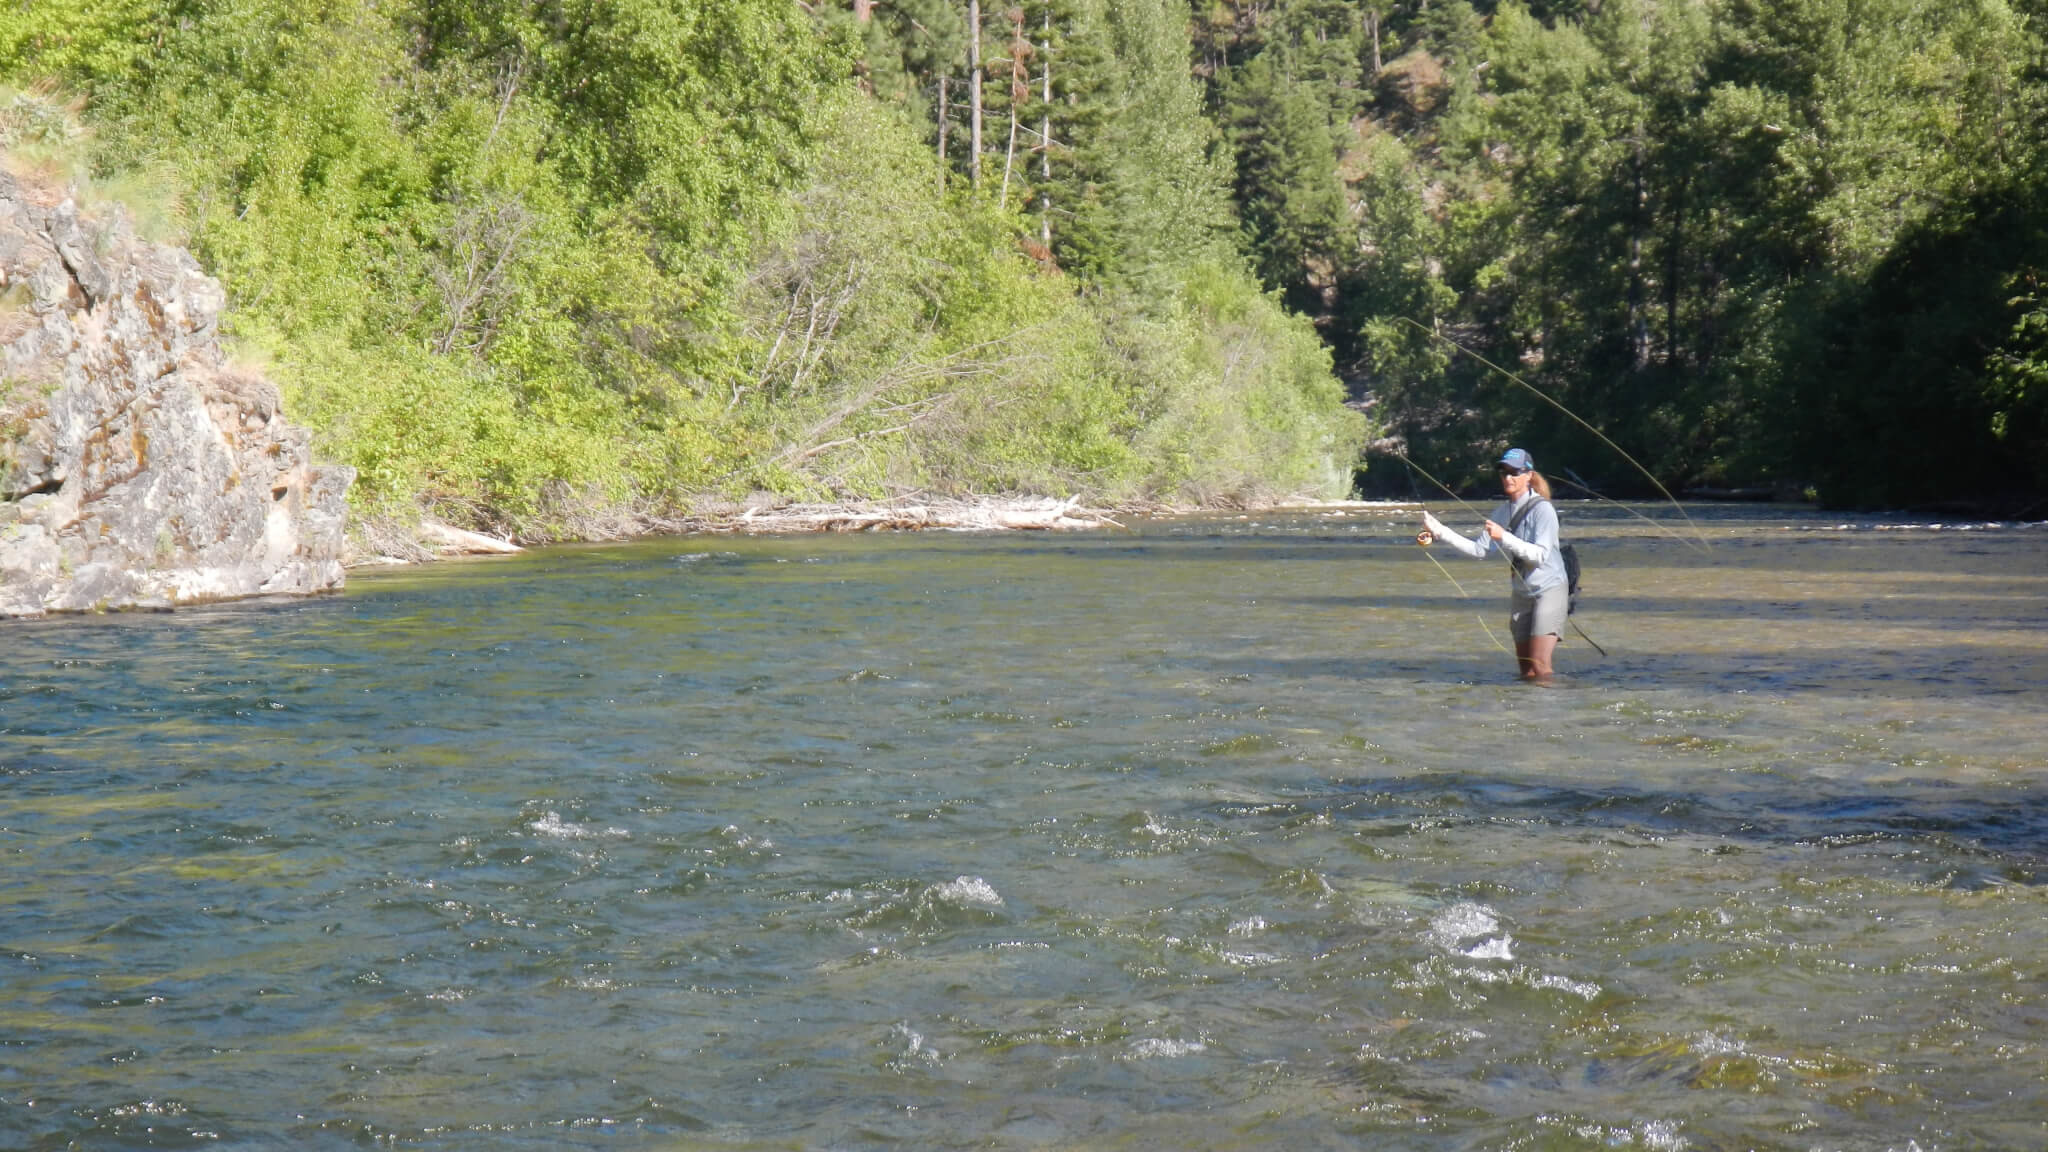 2048x1152 Montana small stream fly fishing.